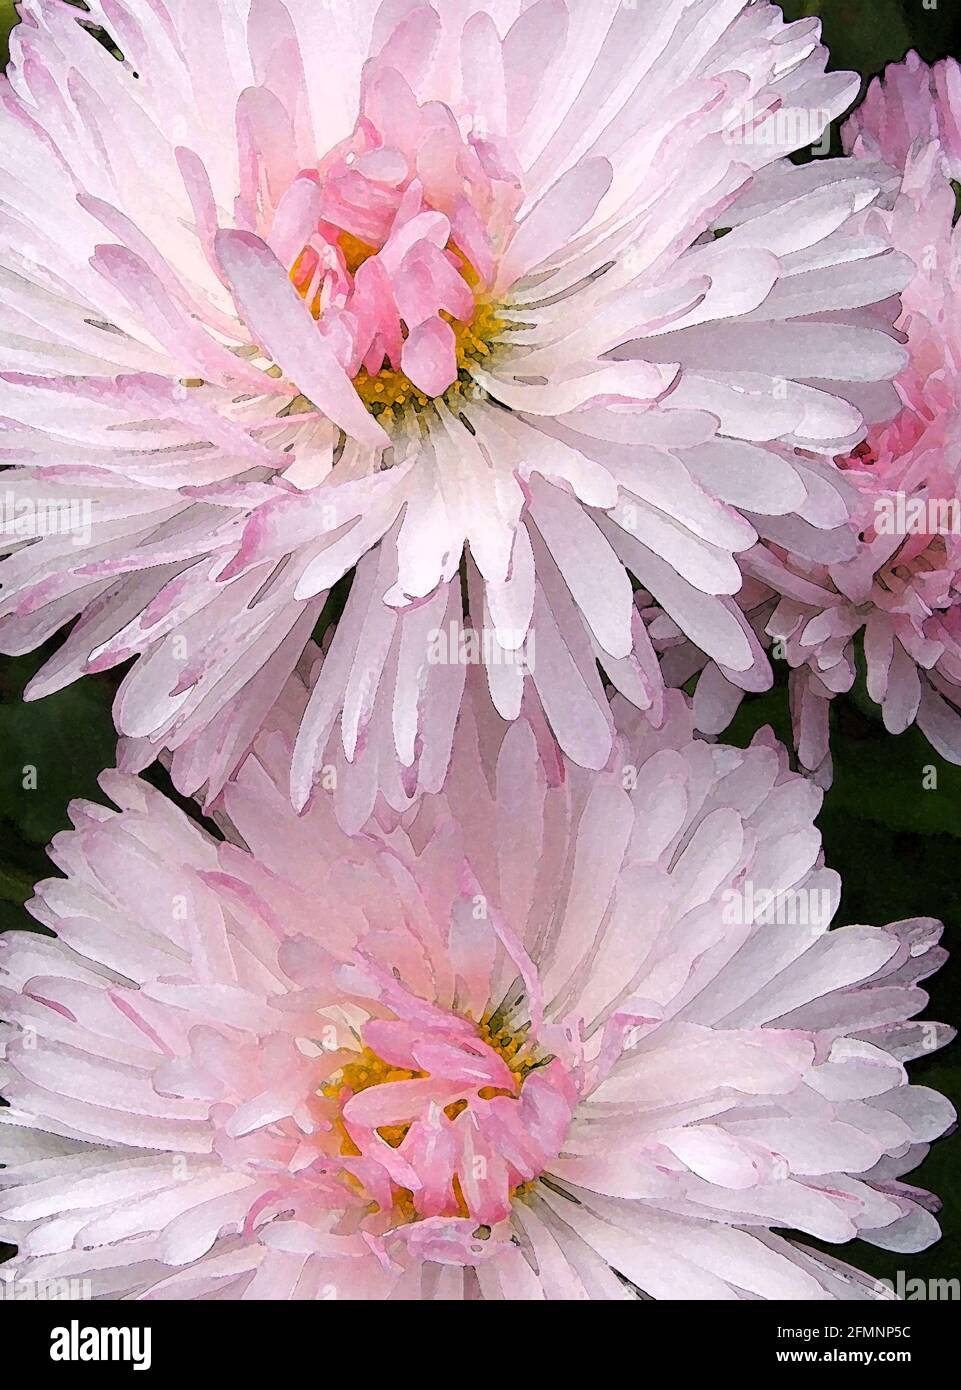 Daisy (Bellis Perennis) eine von 42 ikonischen Bildern von englischen Gartenblumen, Wildblumen und ländlichen Landschaften. Stockfoto